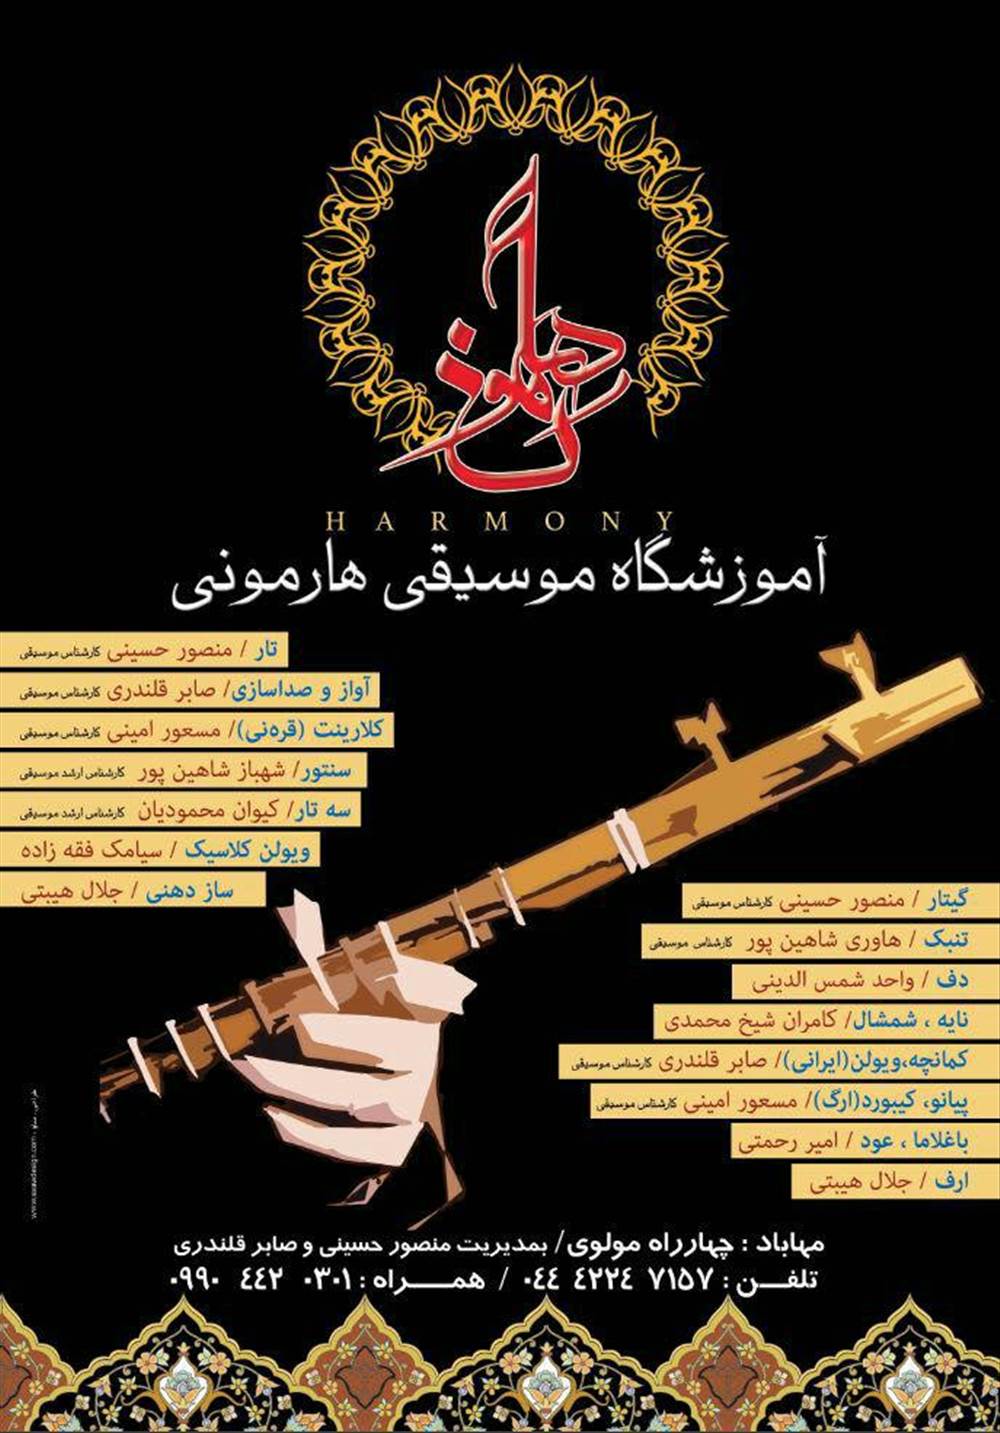 آموزشگاه موسیقی هارمونی مهاباد